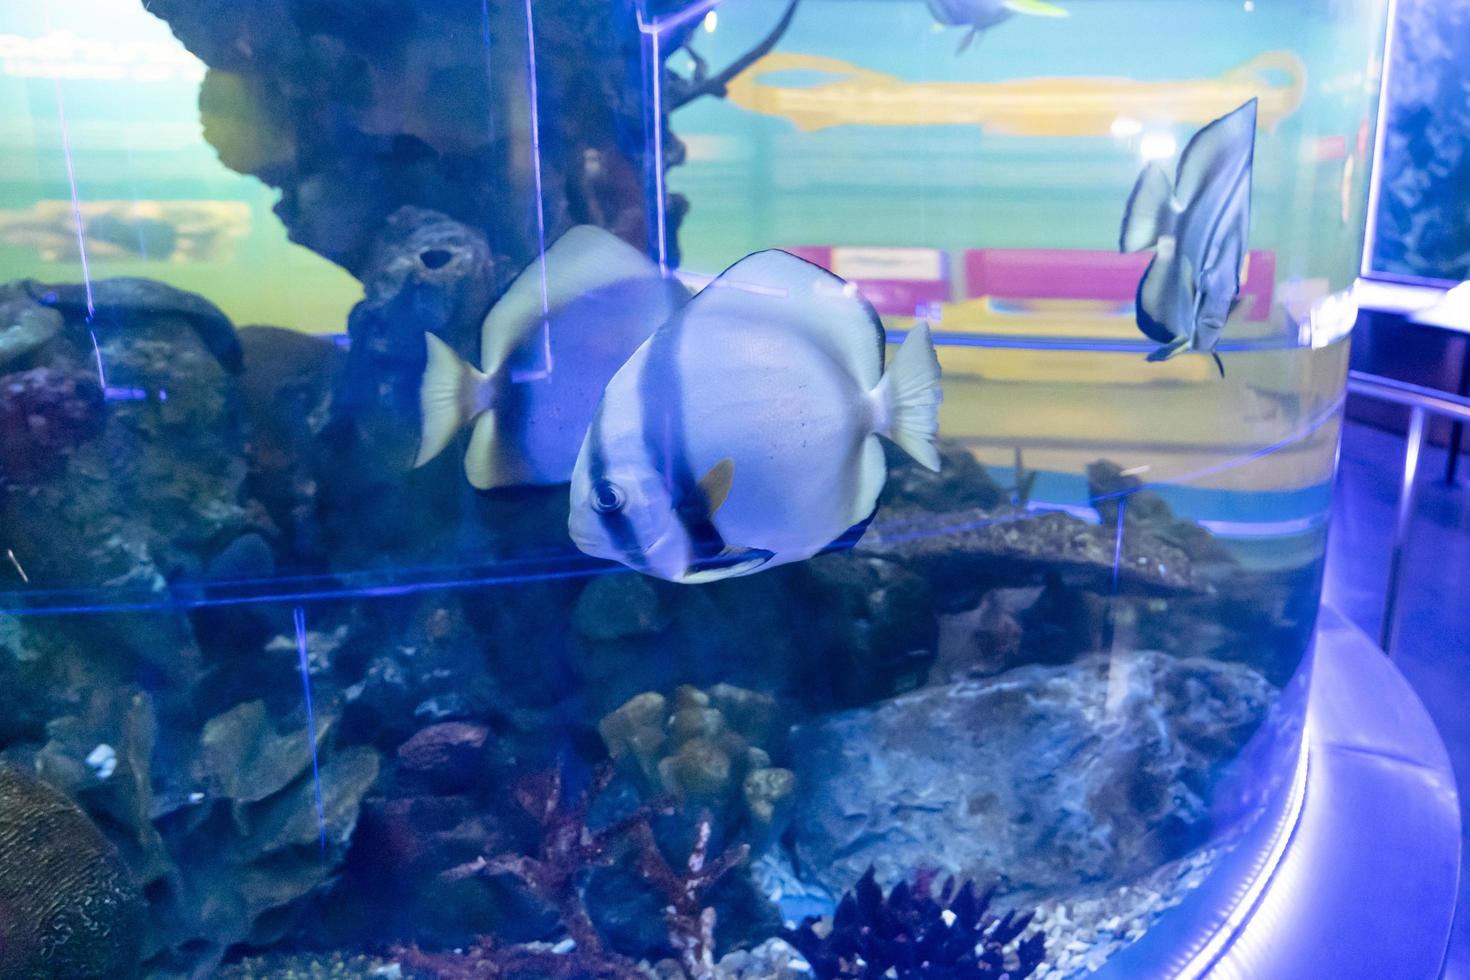 Fische im Aquarium. Konzept für Süßwasseraquarien foto